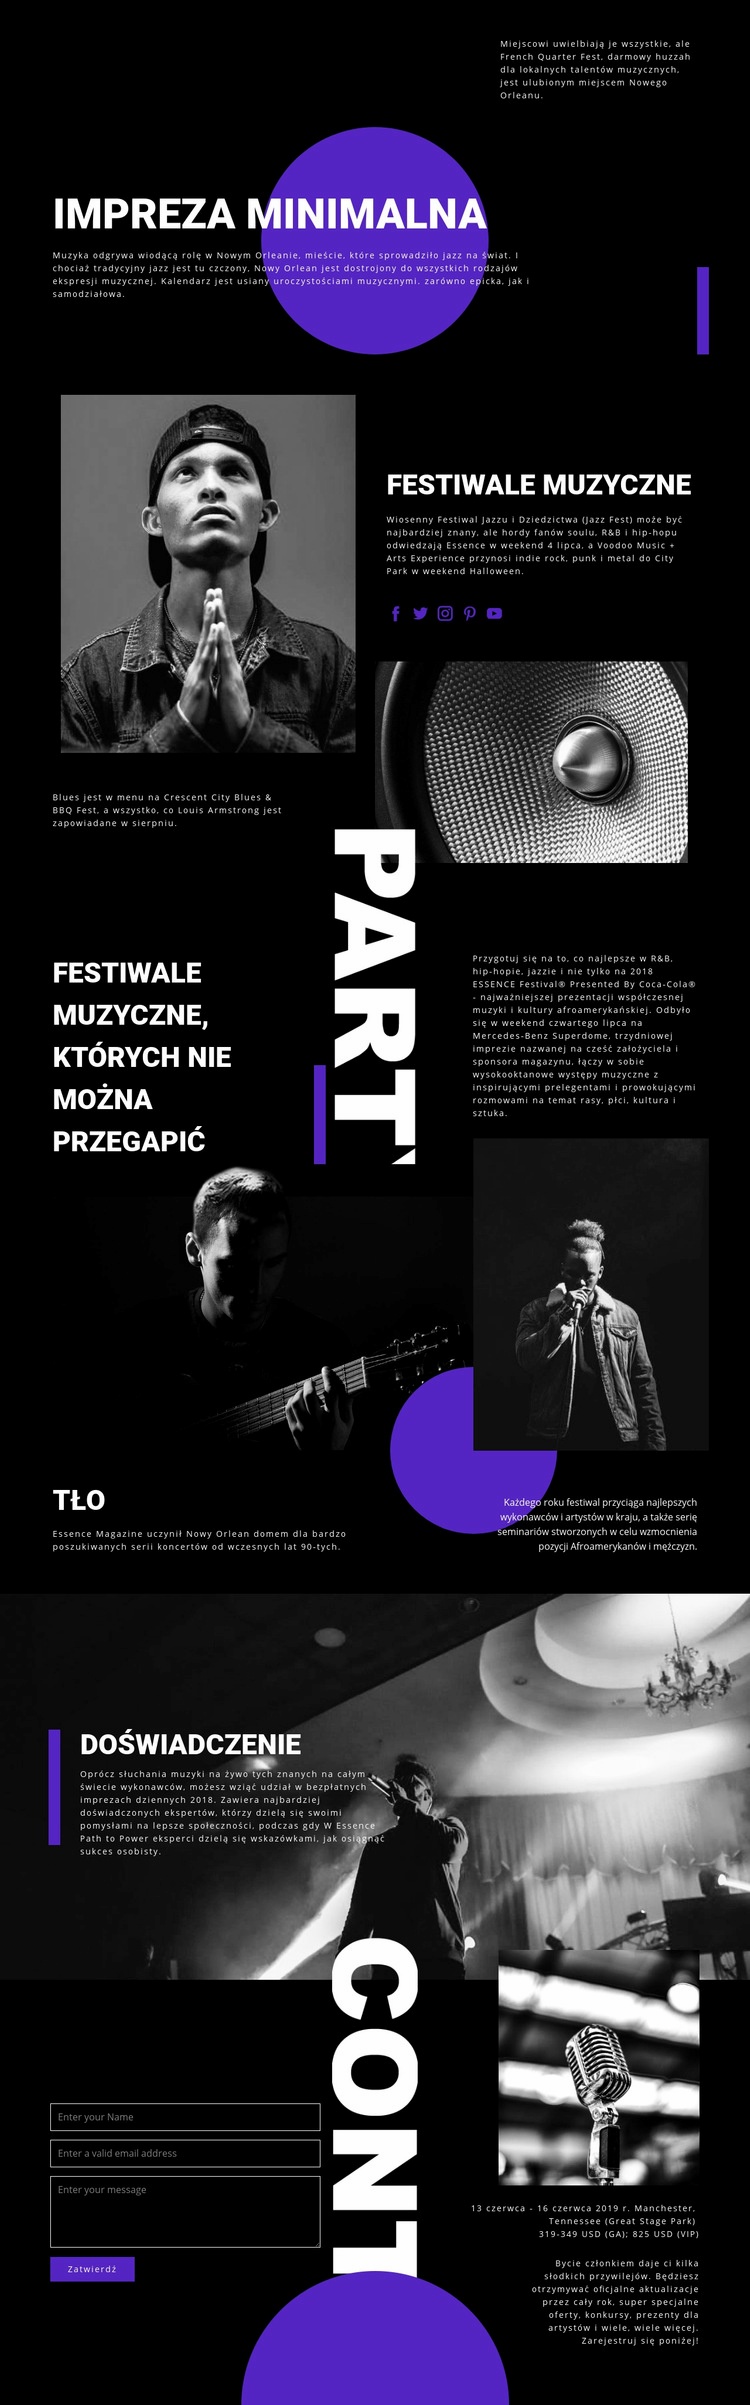 Festiwal Muzyczny Szablon witryny sieci Web